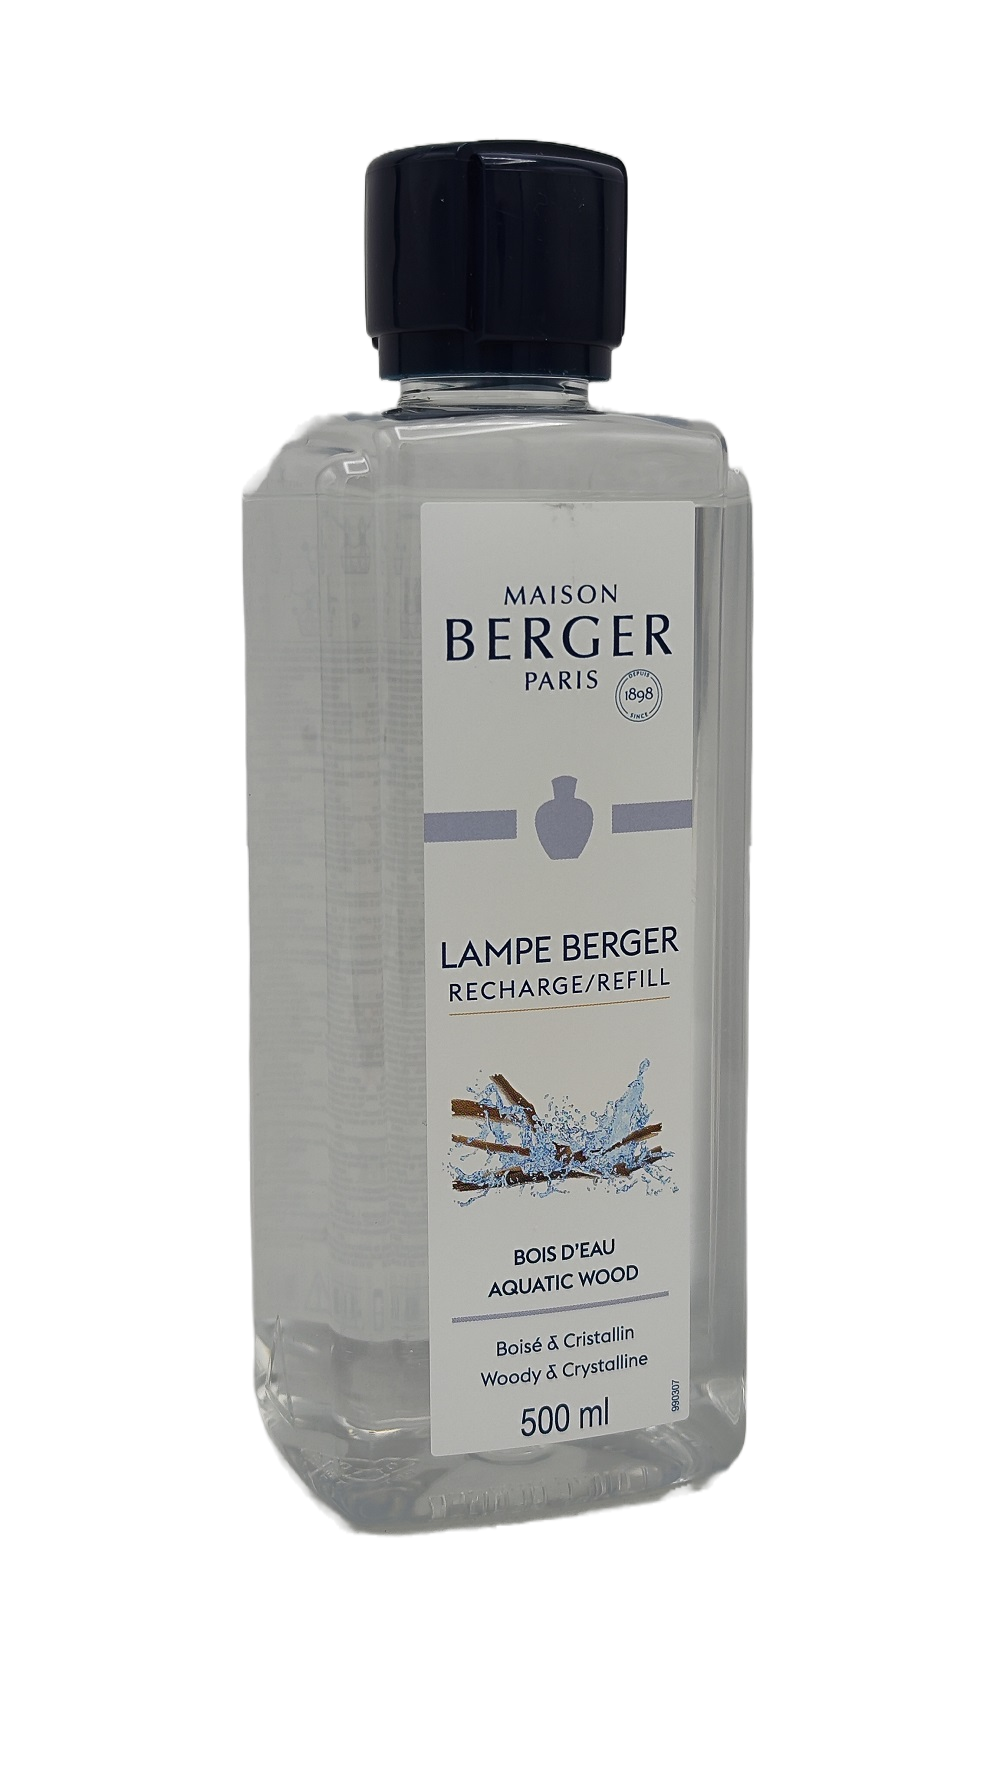 Aquatic Wood - Lampe Berger Refill 500 ml - Maison Berger